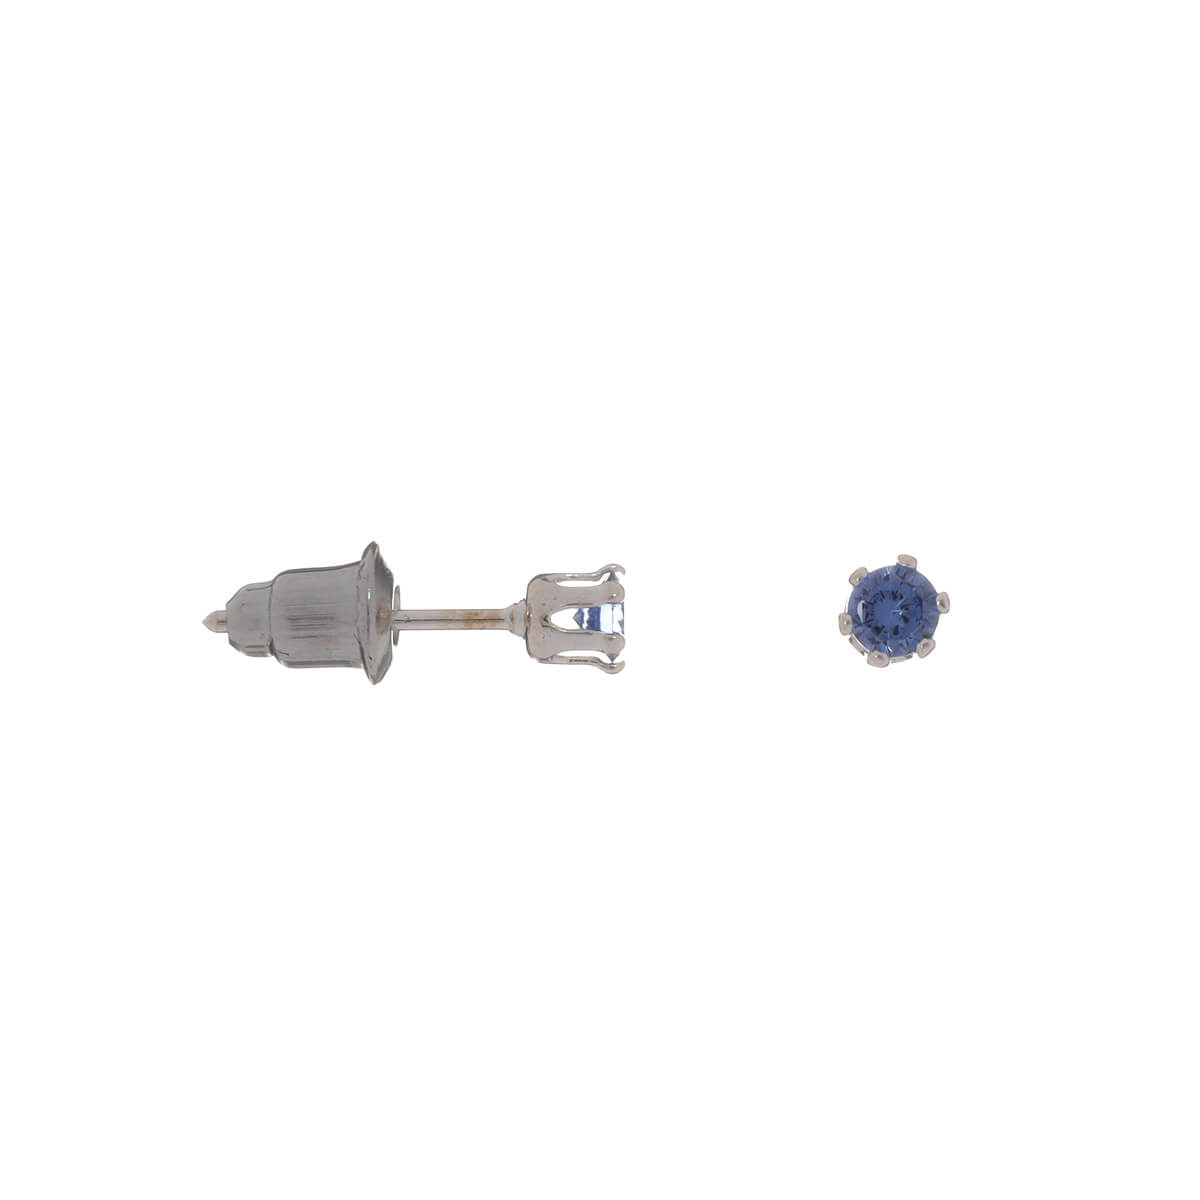 Glass stone earrings 3mm